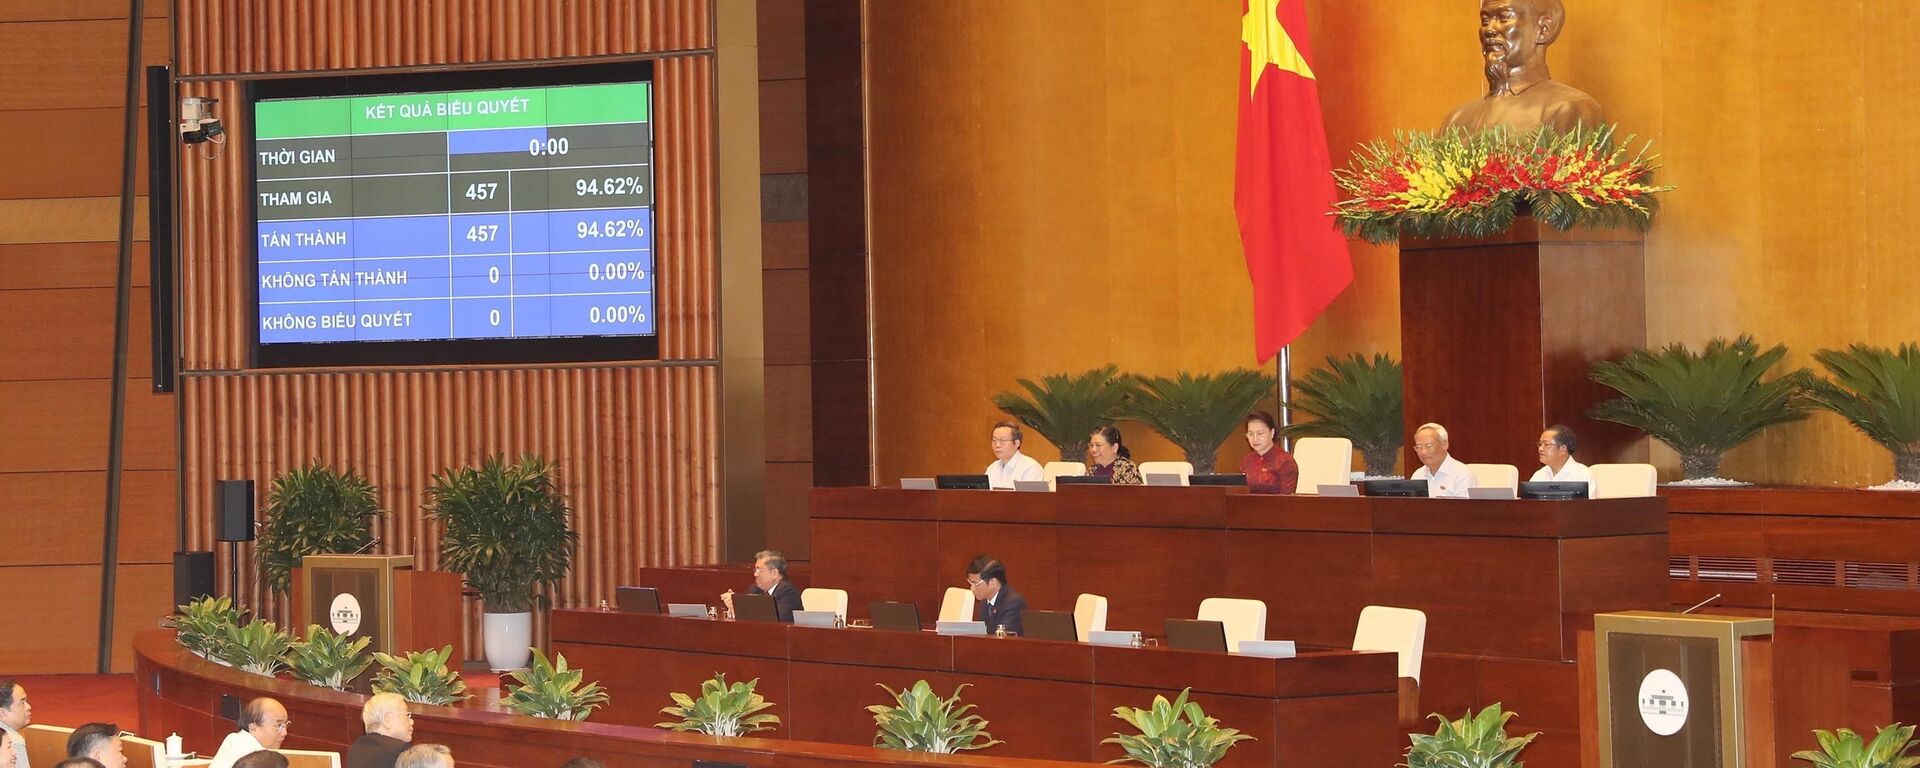 Quốc hội thông qua với tỉ lệ 94,62%. - Sputnik Việt Nam, 1920, 08.06.2020